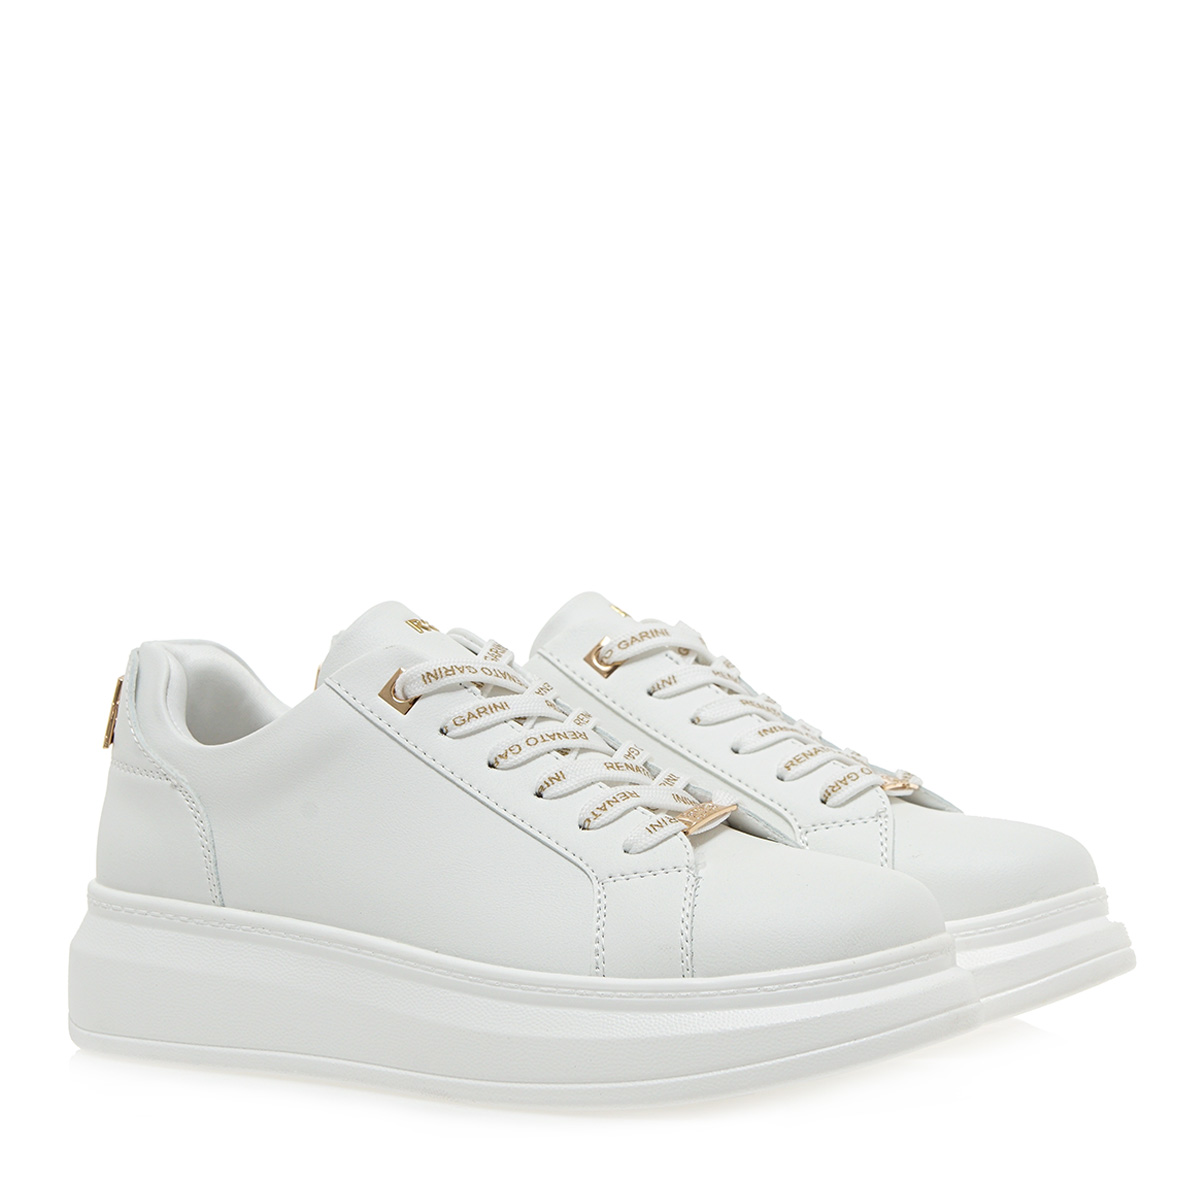 Γυναικείο sneaker σε λευκό χρώμα  Renato Garini  S119R6582948 Collection SS 2024